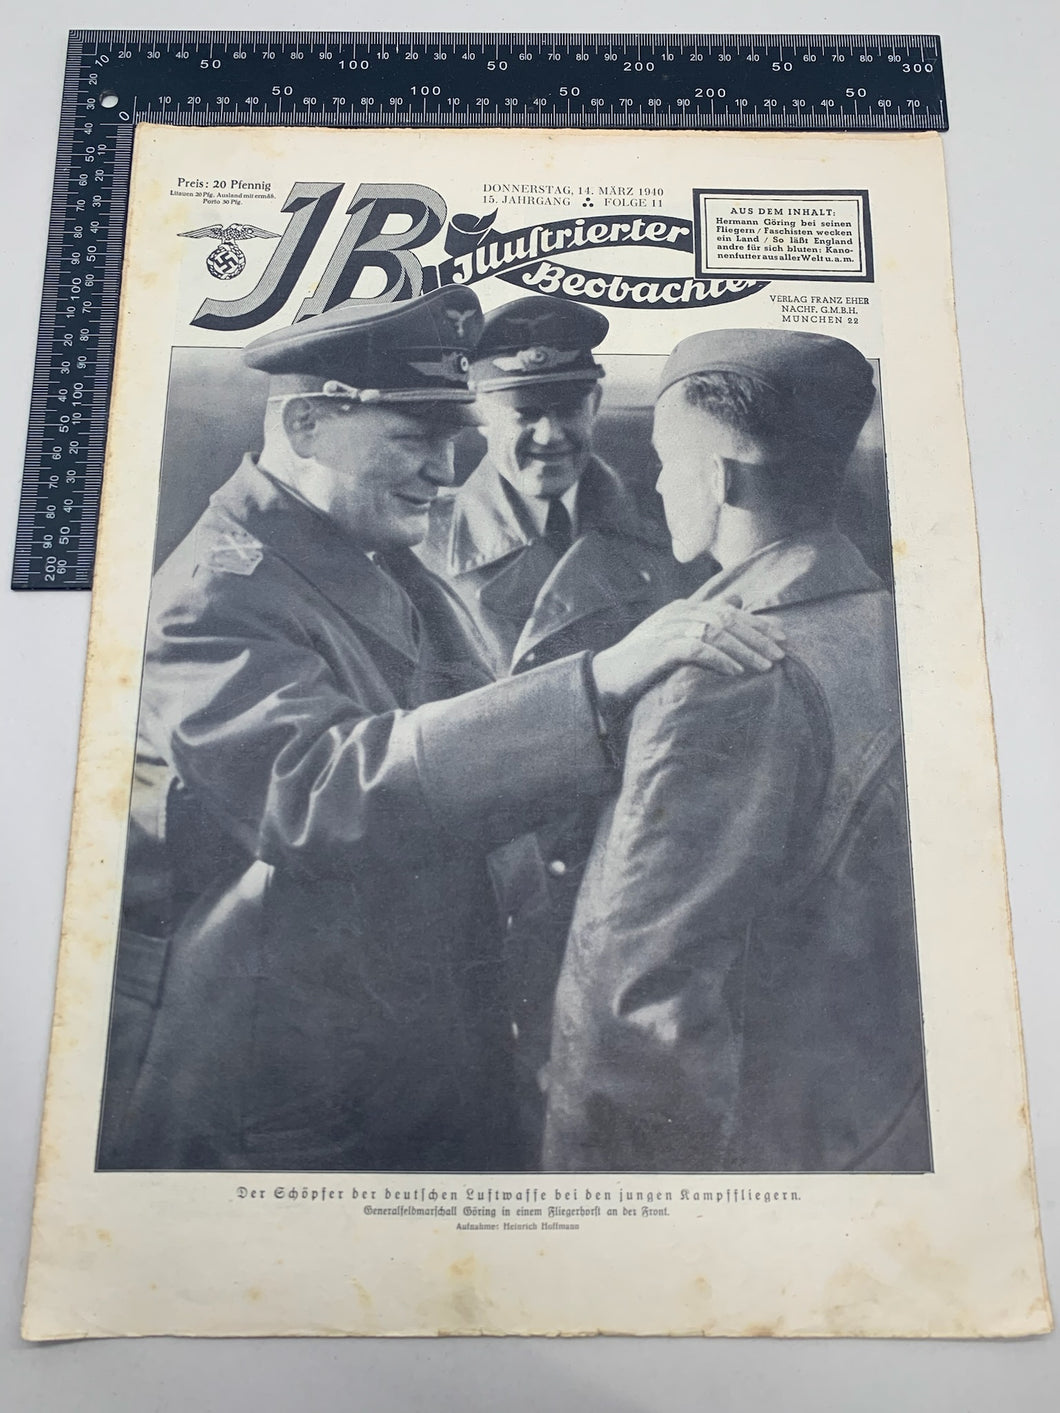 JB Juustrierter Beobachter NSDAP Magazine Original WW2 German - 14th March 1940